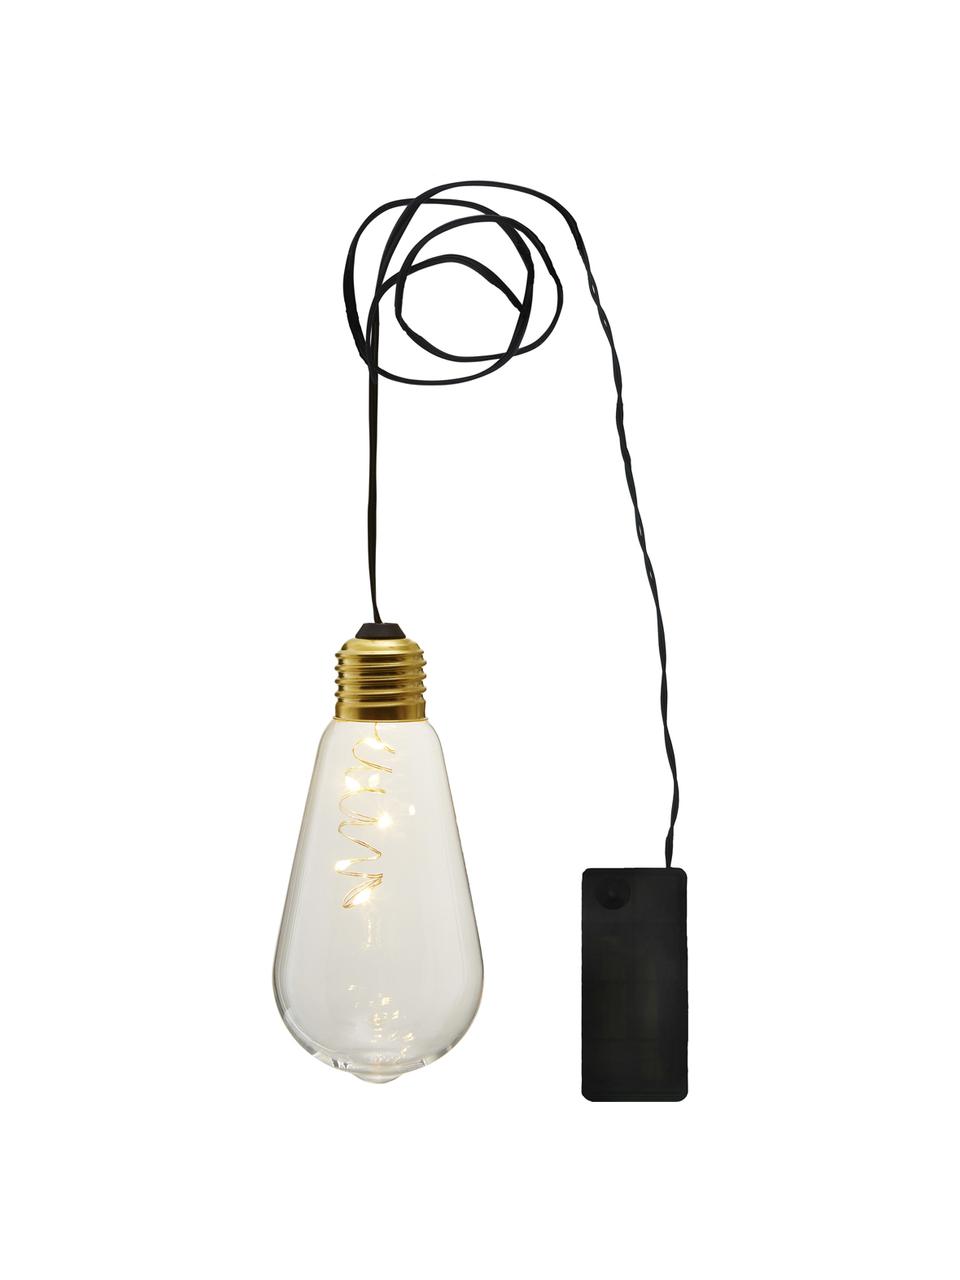 LED-Dekoleuchte Glow, 1 Stück, Lampenschirm: Glas, Transparent, Ø 6 x H 13 cm